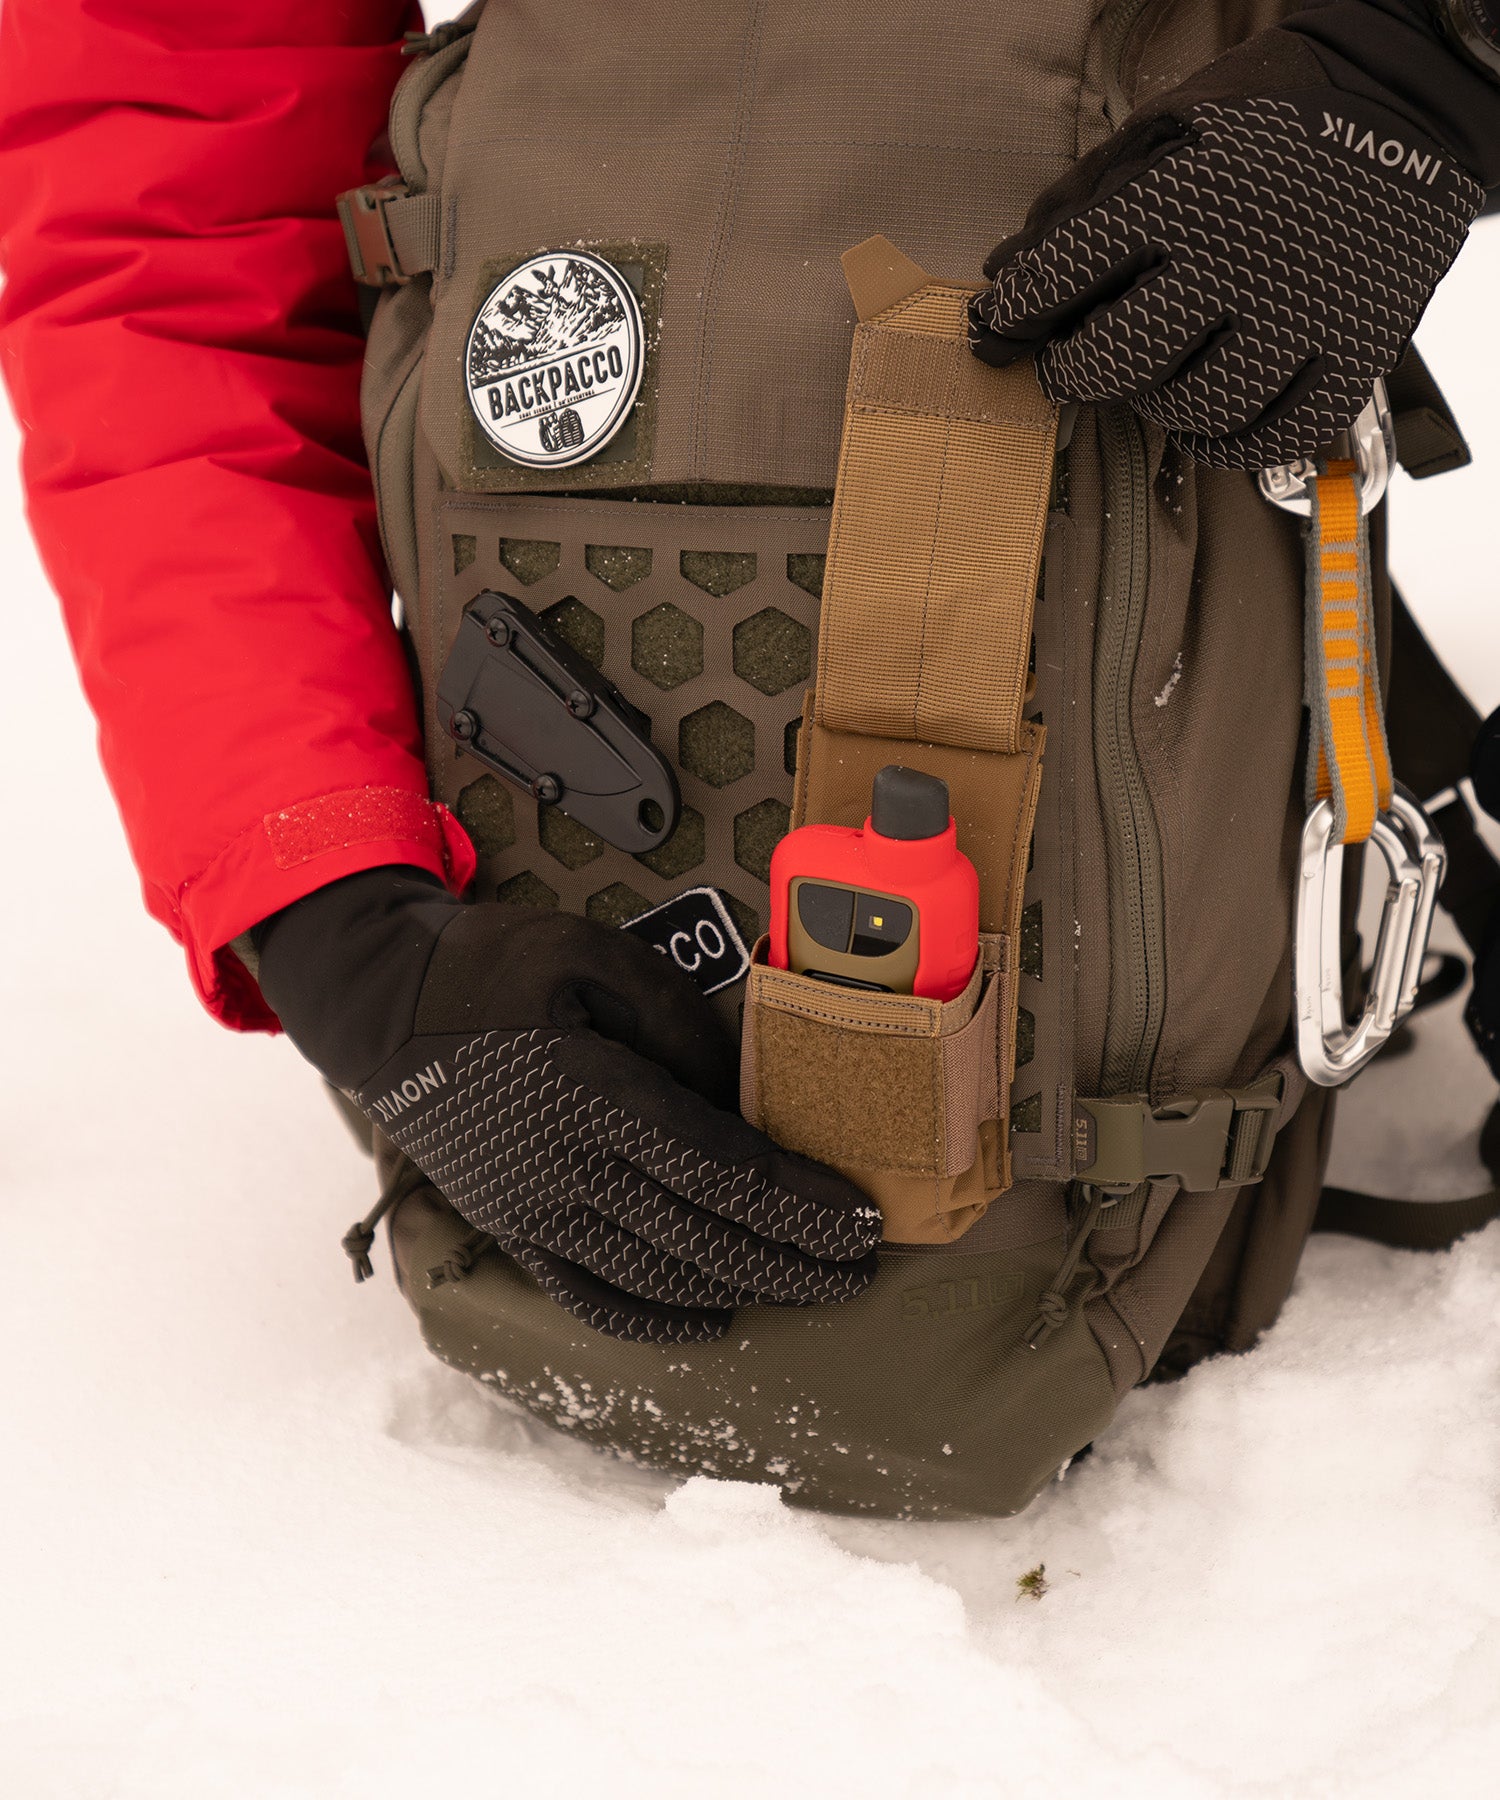 Paolo di backpacco mostra la tasca flash bang pouch di 5.11 con il gps Garmin GPSMAP durante un'escursione sulla neve